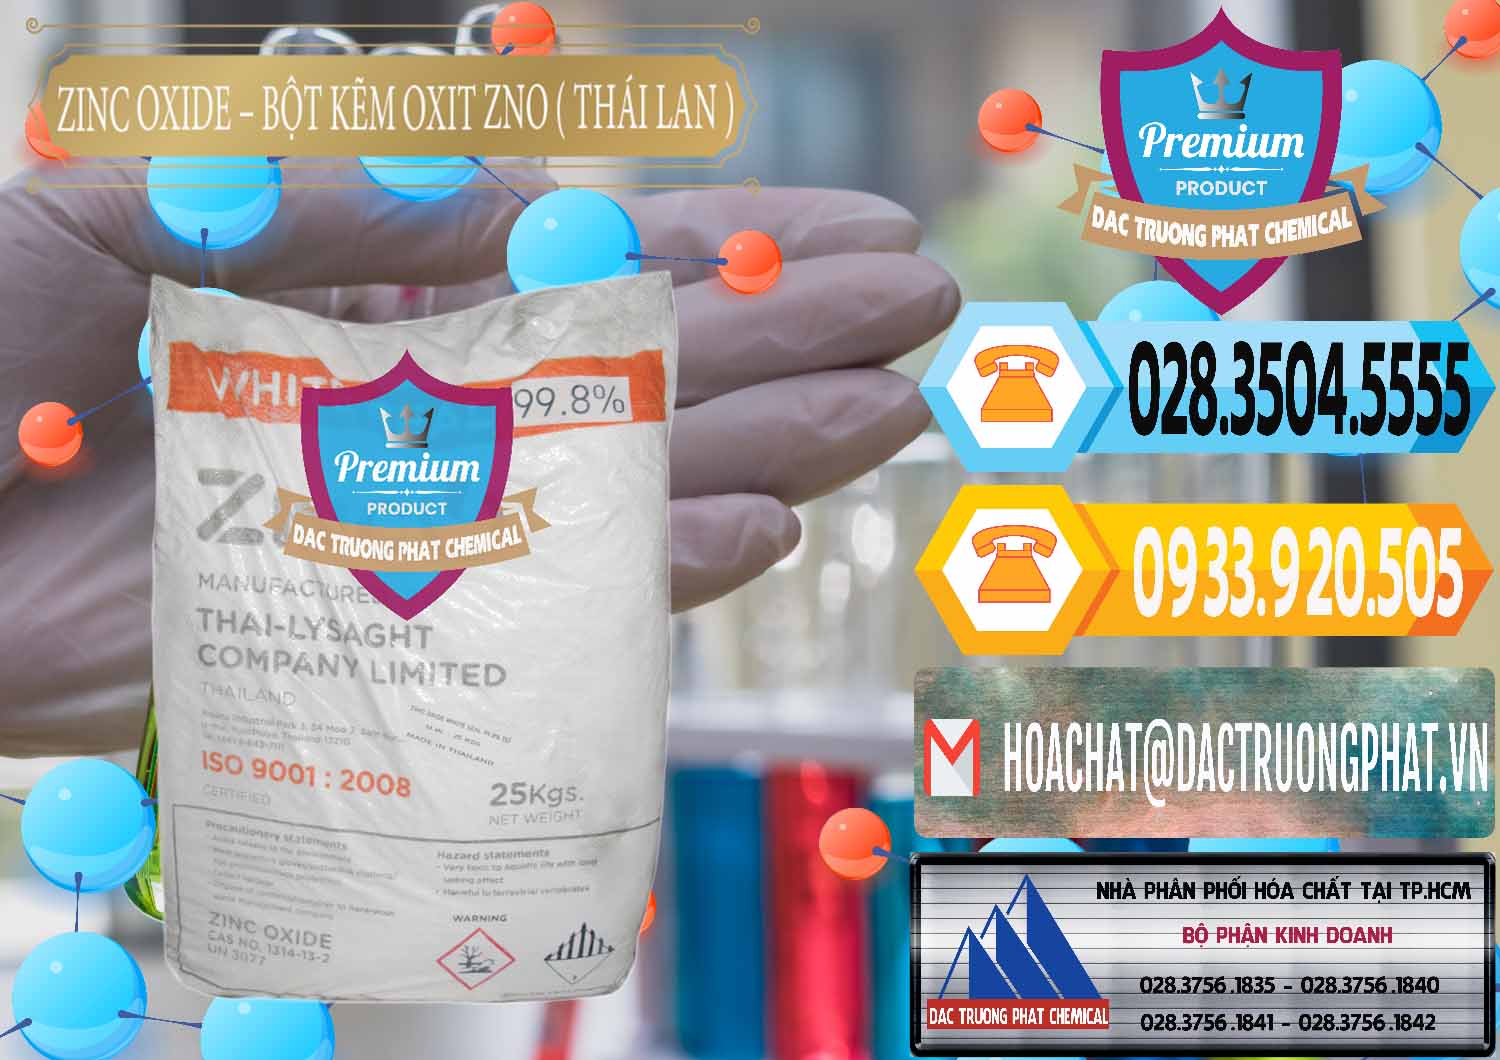 Nơi bán - phân phối Zinc Oxide - Bột Kẽm Oxit ZNO Thái Lan Thailand - 0181 - Nơi cung cấp ( phân phối ) hóa chất tại TP.HCM - hoachattayrua.net